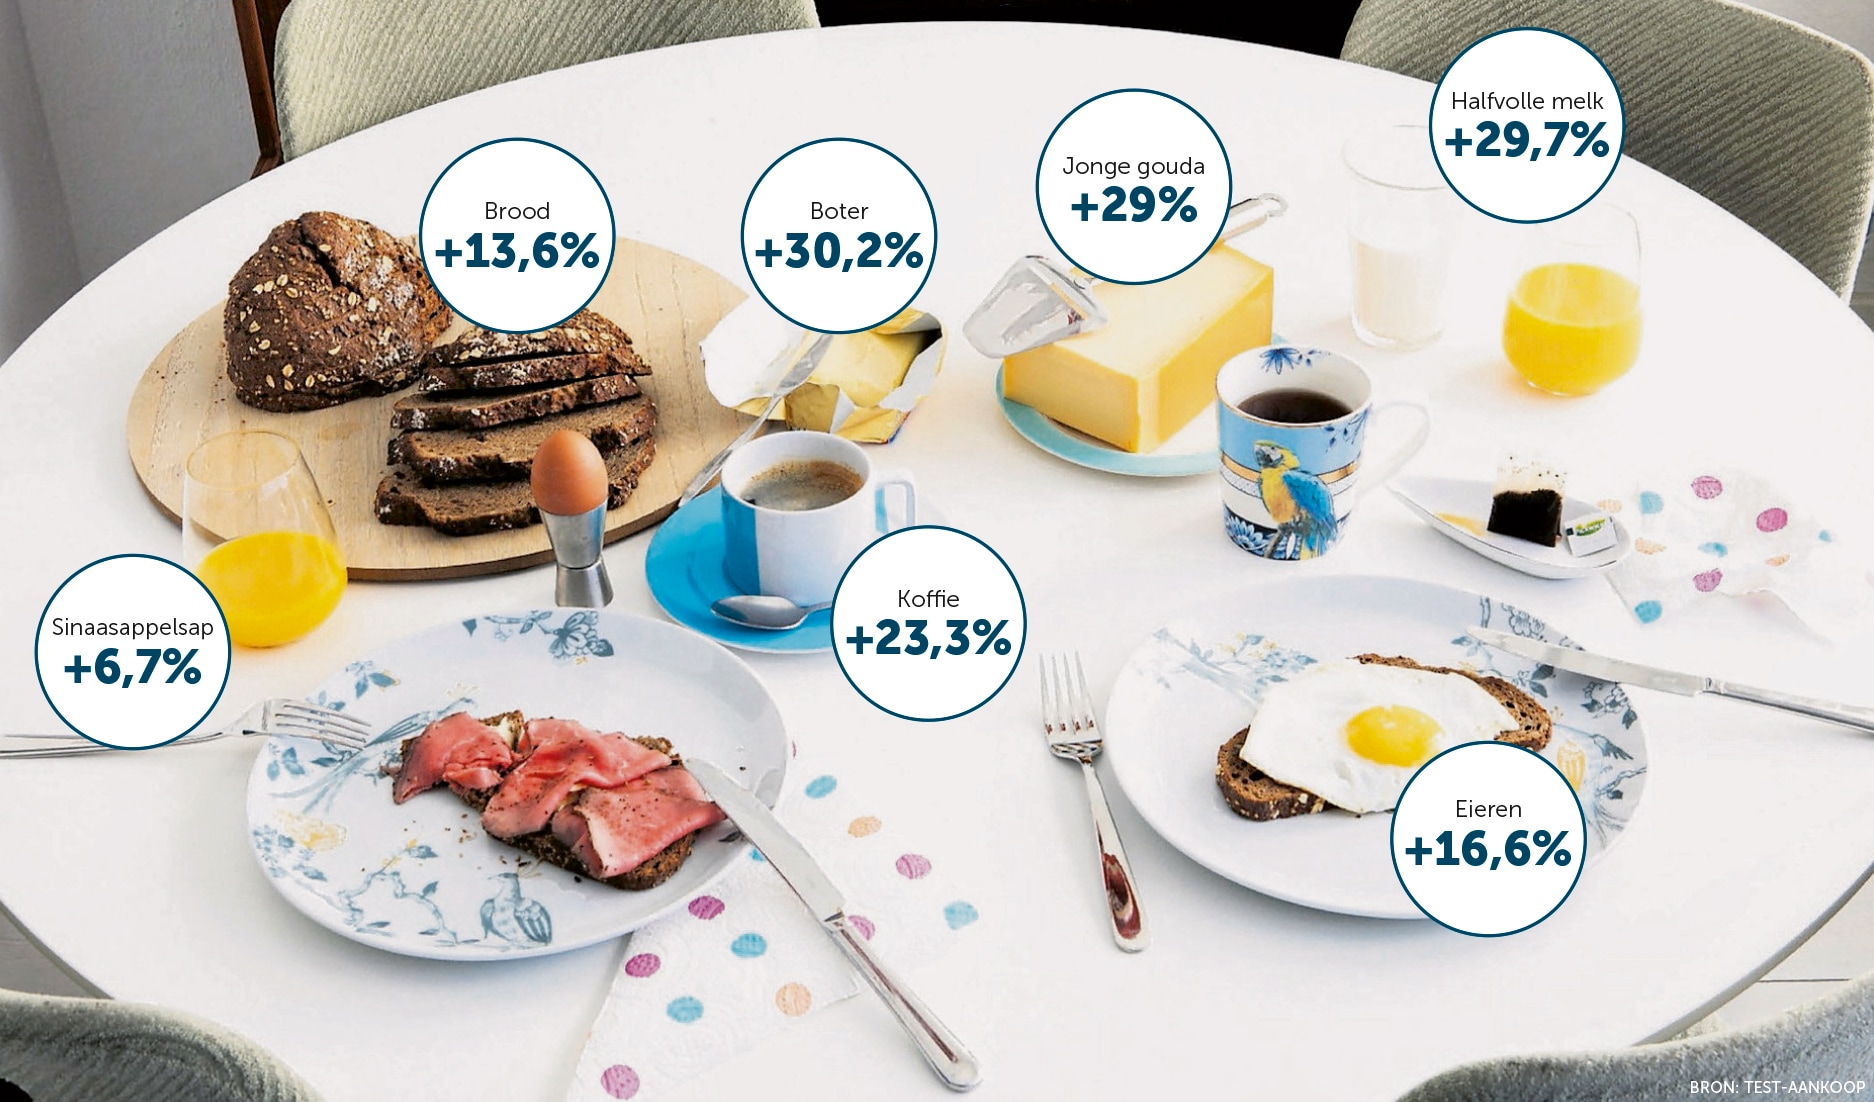 Eieren, koffie, brood, kaas: alles van uw ontbijt wordt duurder, maar hoeveel juist?